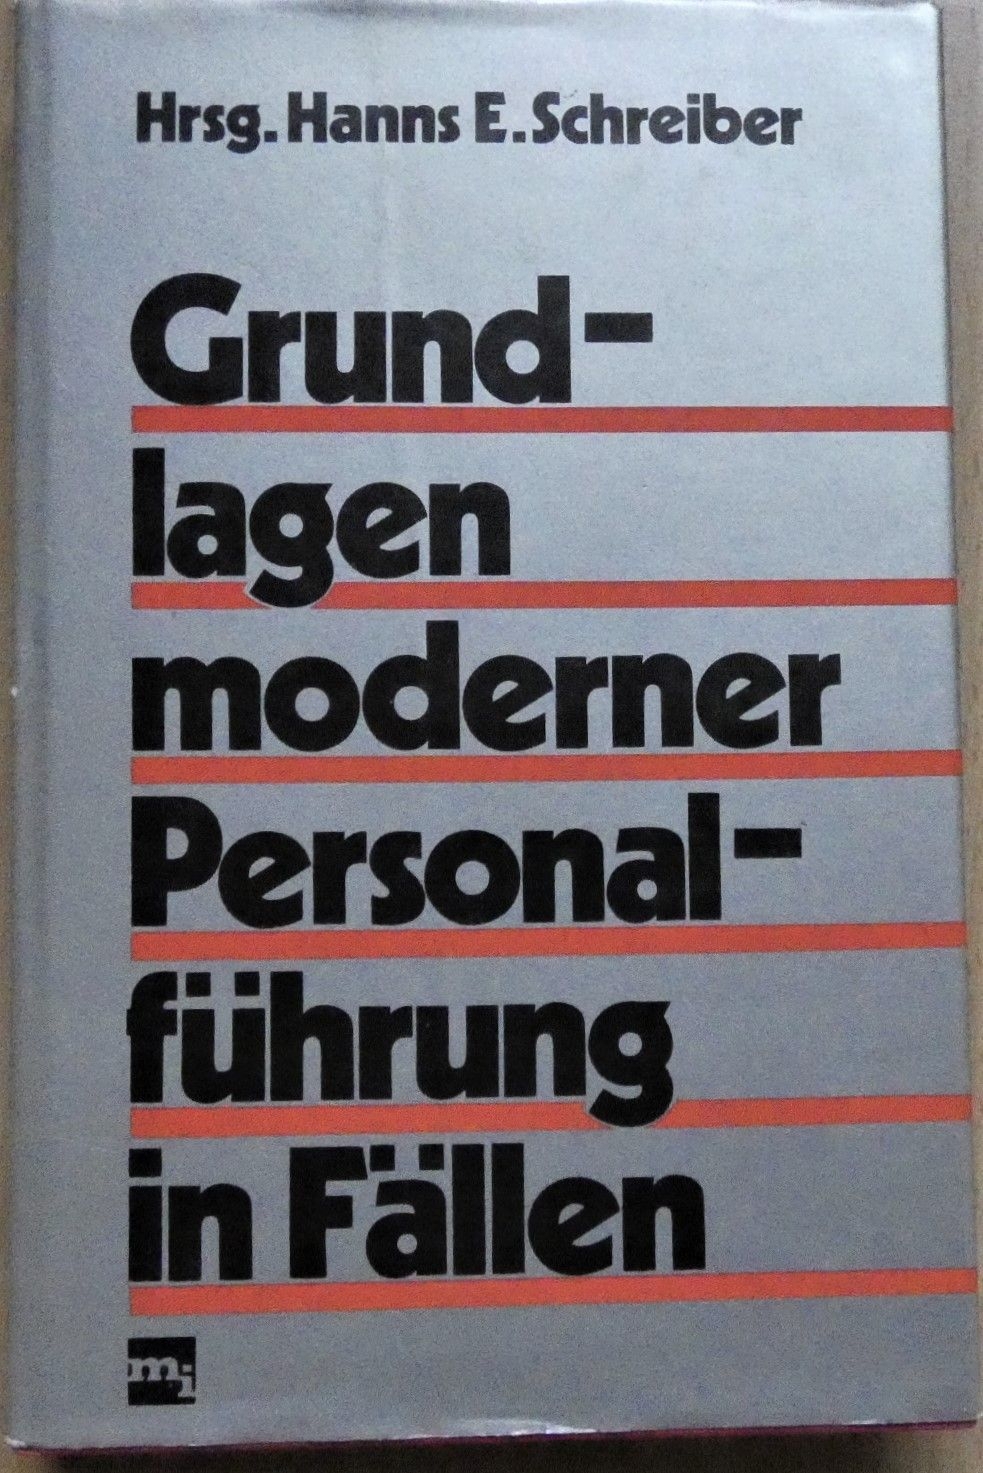 Grundlagen moderner Personalführung in Fällen / Hrsg. Hanns E.Schreiber